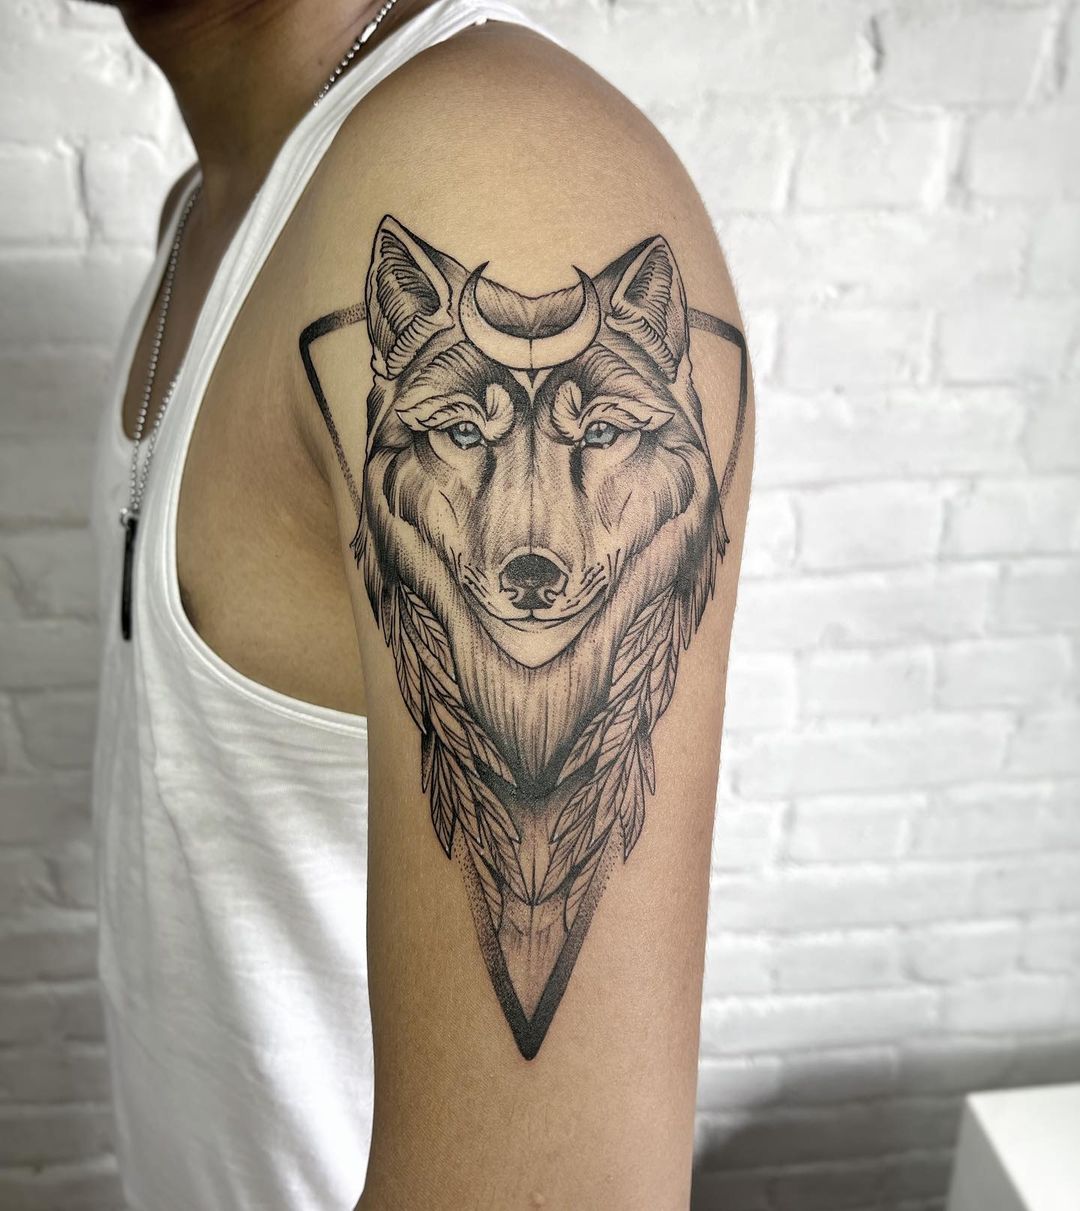 Floral Wolf Tattoo Design by brianna-artwork on DeviantArt